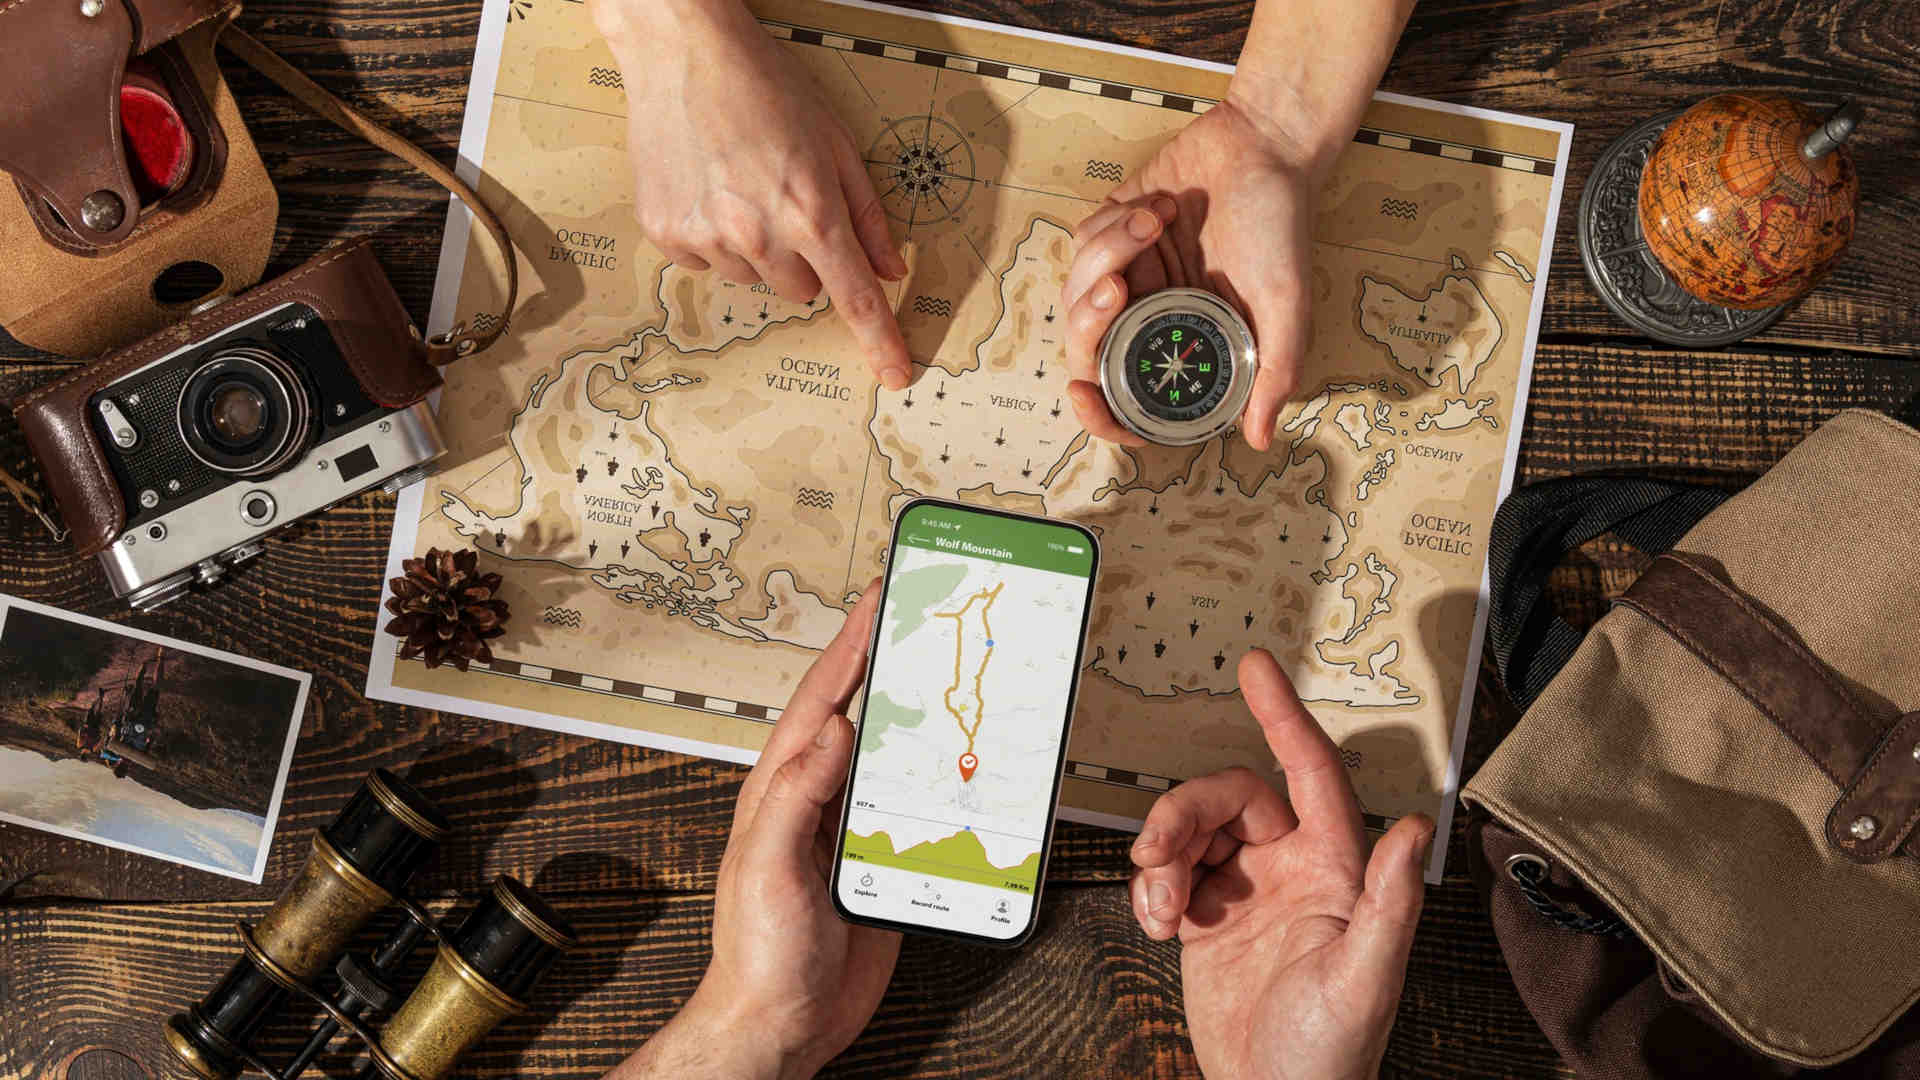 Mit Smartphone, Karte und Kompass suchen zwei Geocacher den richtigen Weg zum Cach, dem Versteck des Schatzes.